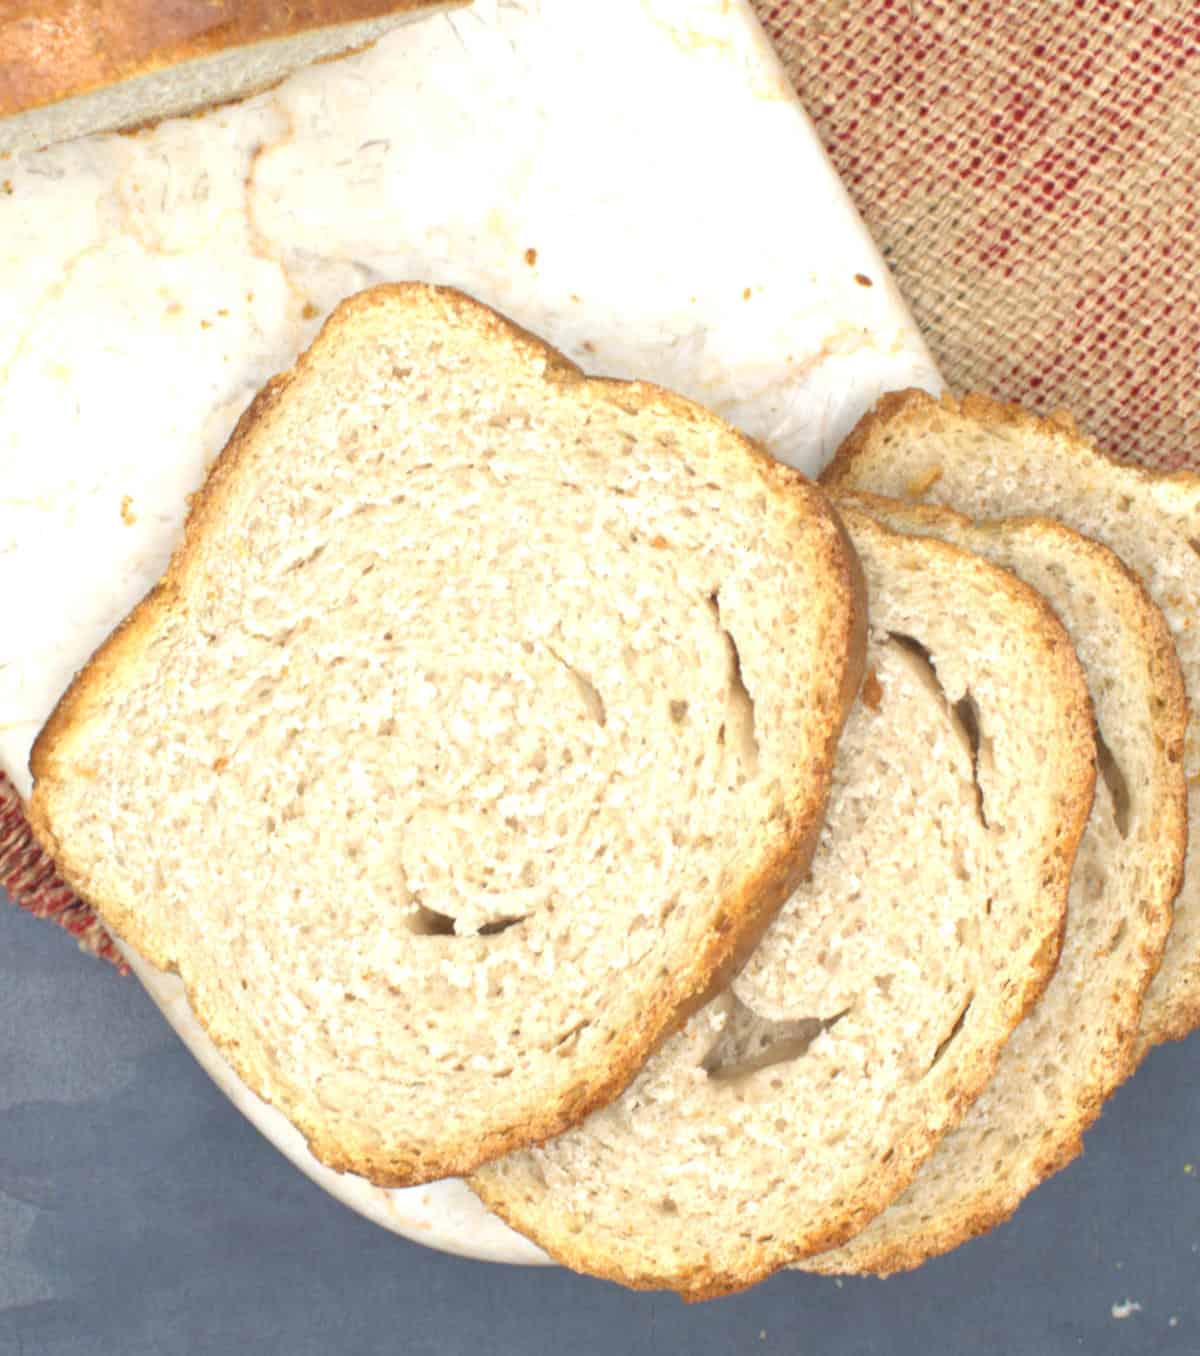 Slices of sourdough sandwich bread on marble board.